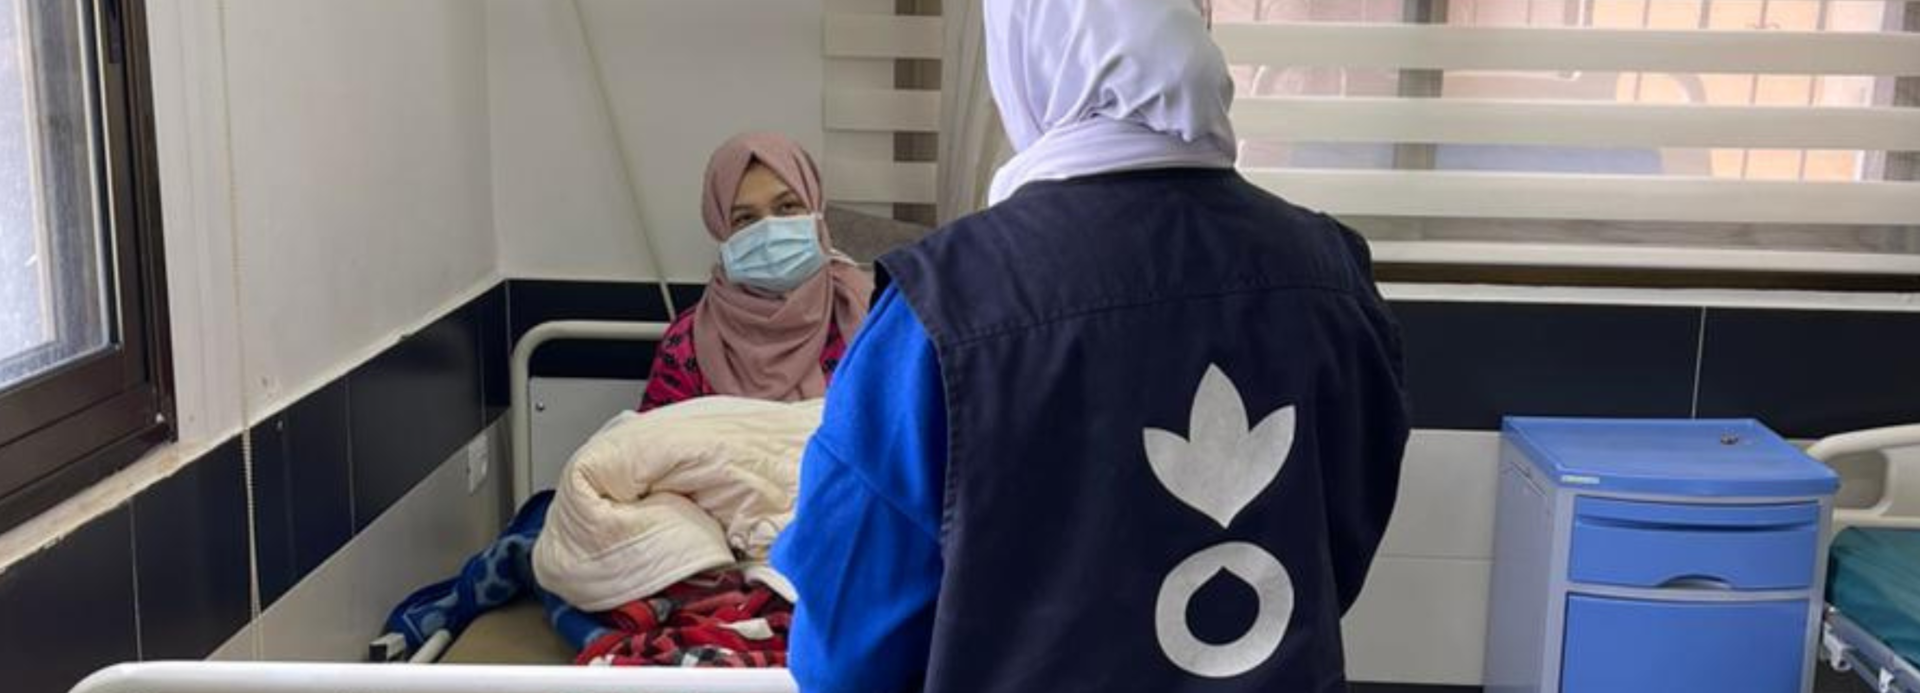 Eine Mitarbeiterin von Aktion gegen den Hunger spricht mit einer Frau in einem Krankenhaus in Gaza.